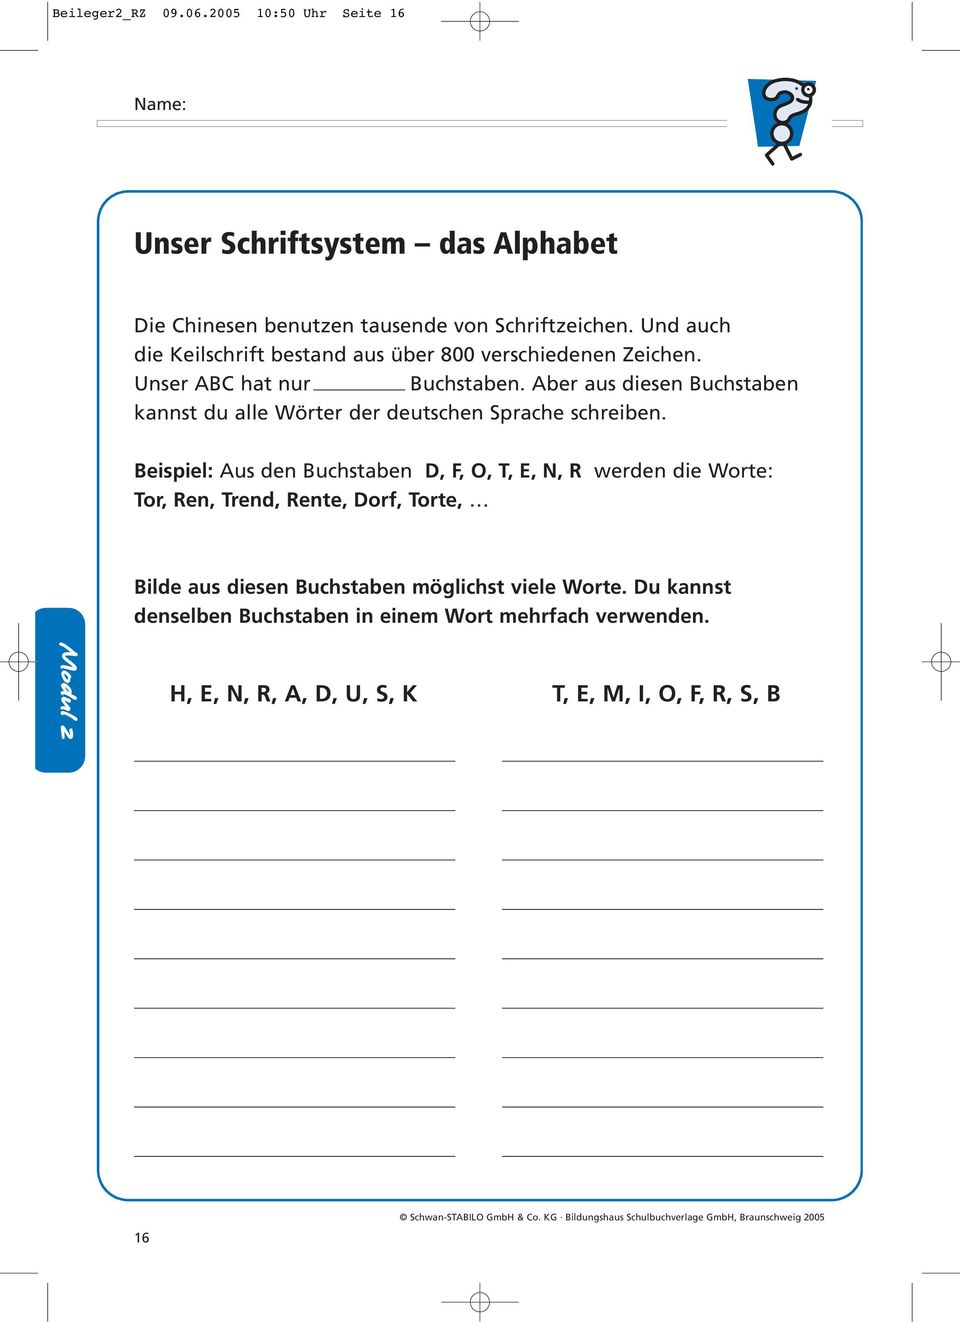 Aber aus diesen Buchstaben kannst du alle Wörter der deutschen Sprache schreiben.